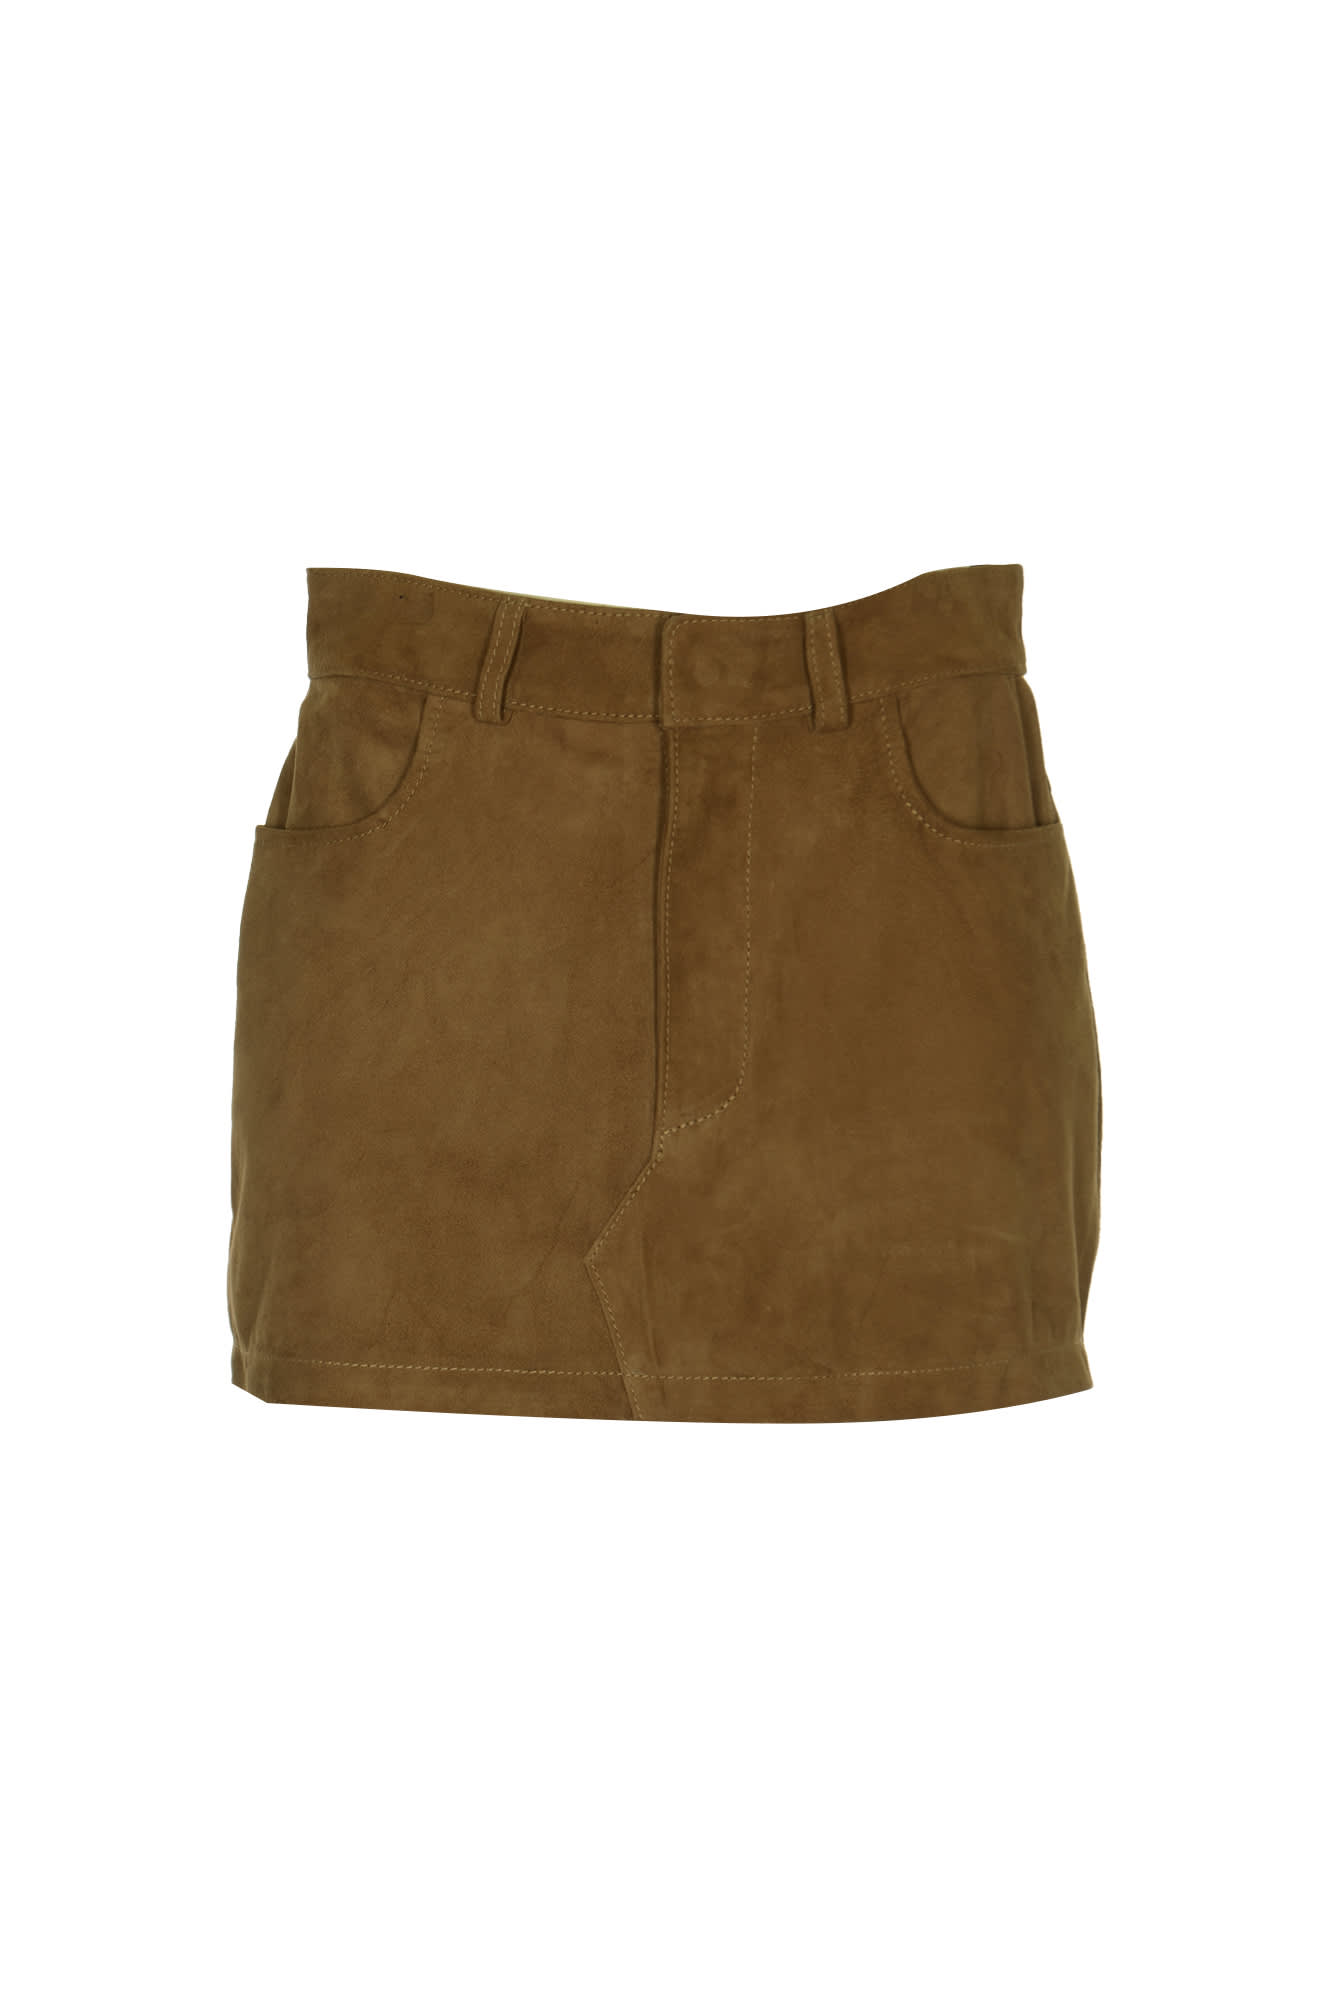 5 Pockets Short Skirt